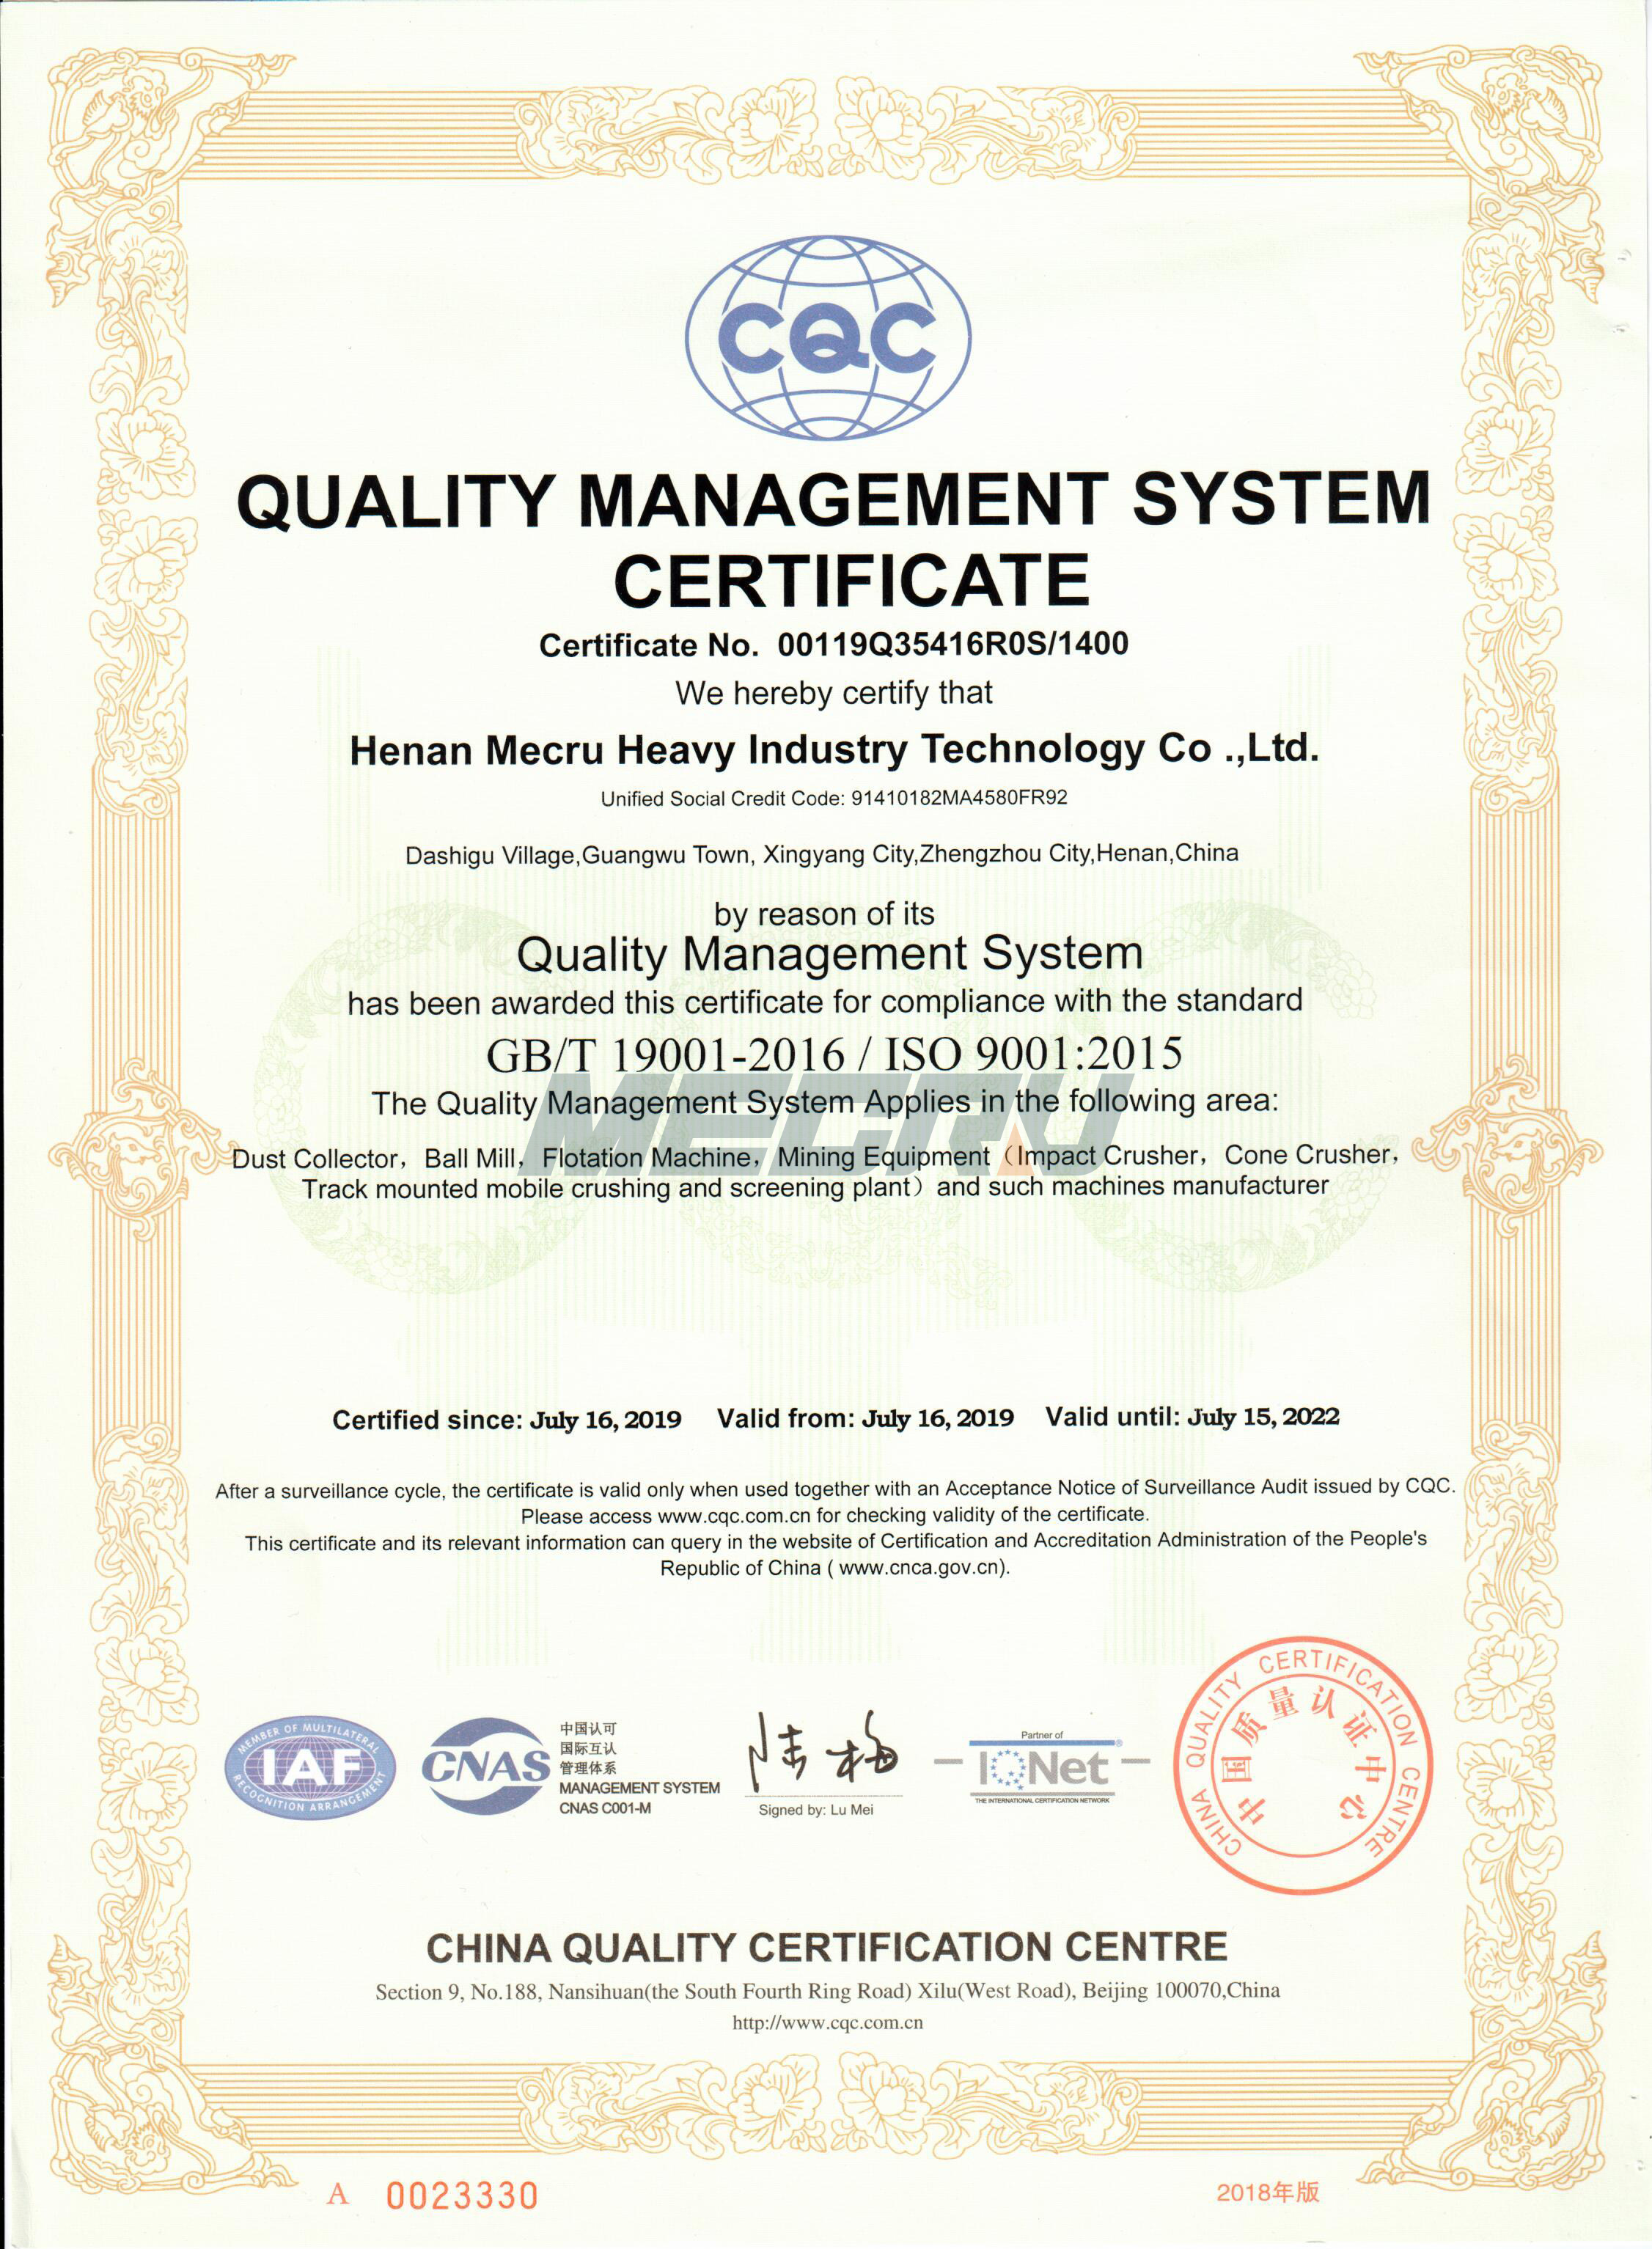 Chứng nhận hệ thống quản lý chất lượng (2)